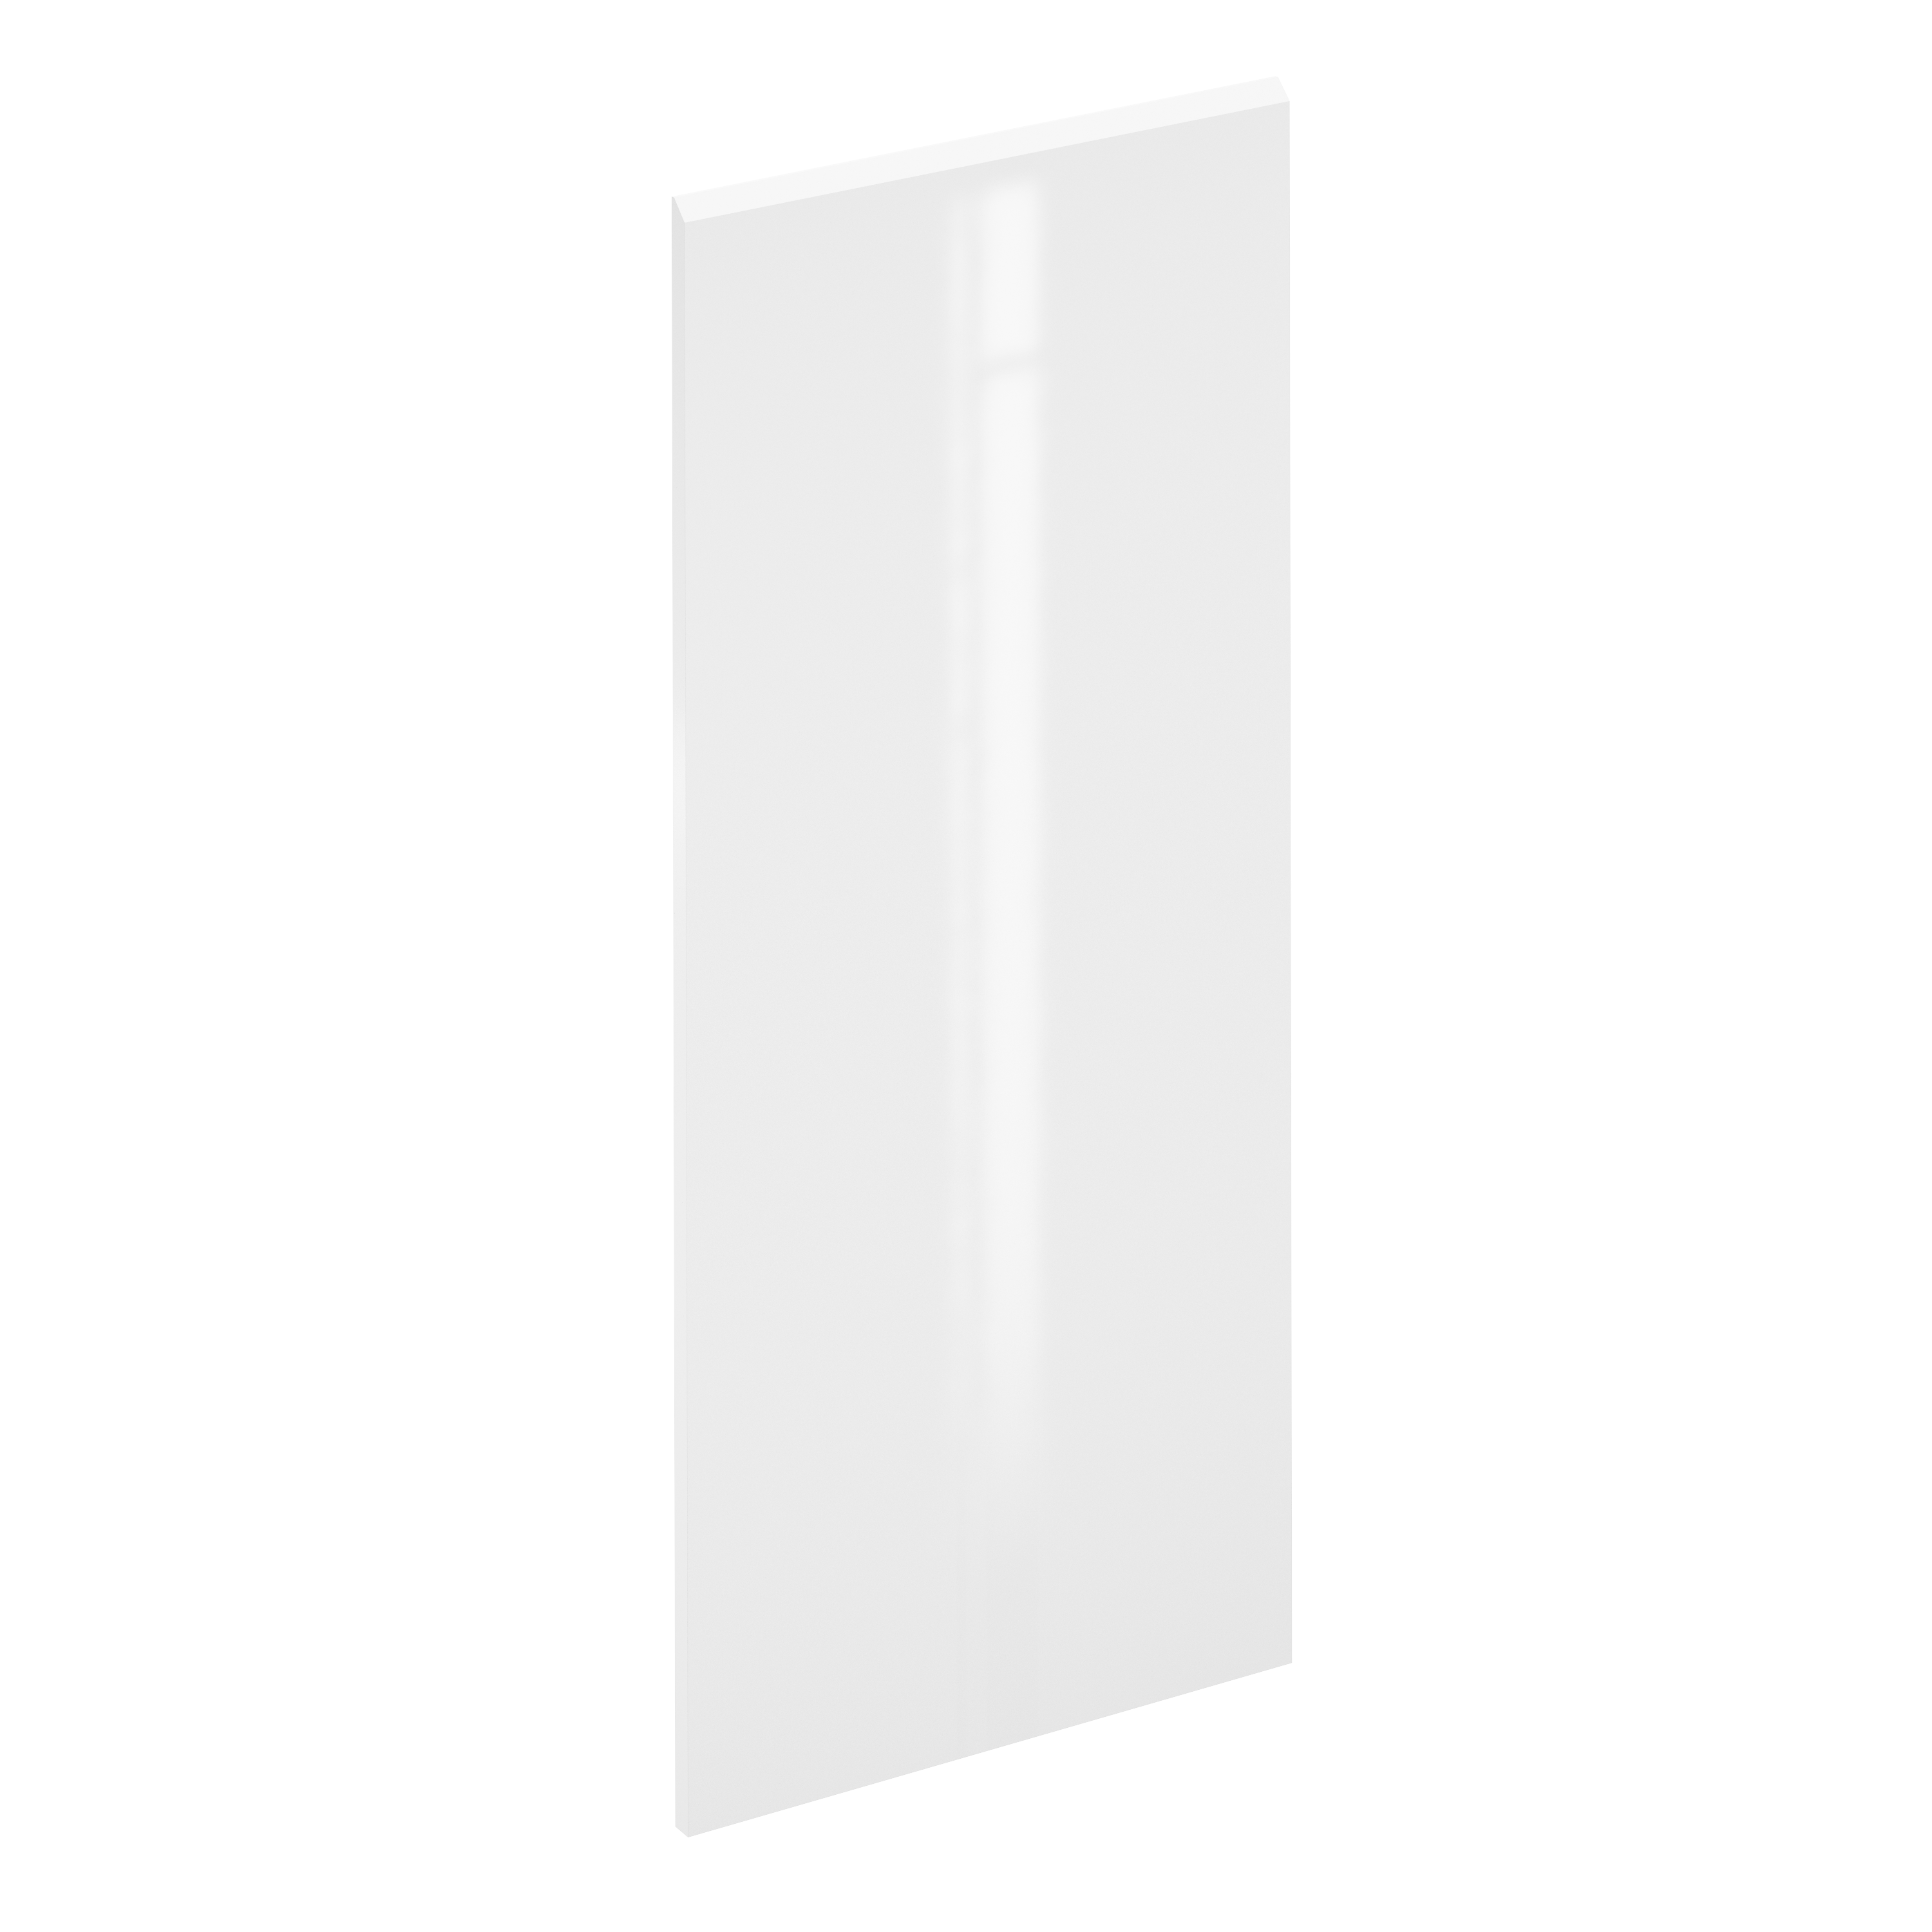 Puerta para mueble de cocina tokyo blanco brillo h 137.6 x l 60 cm